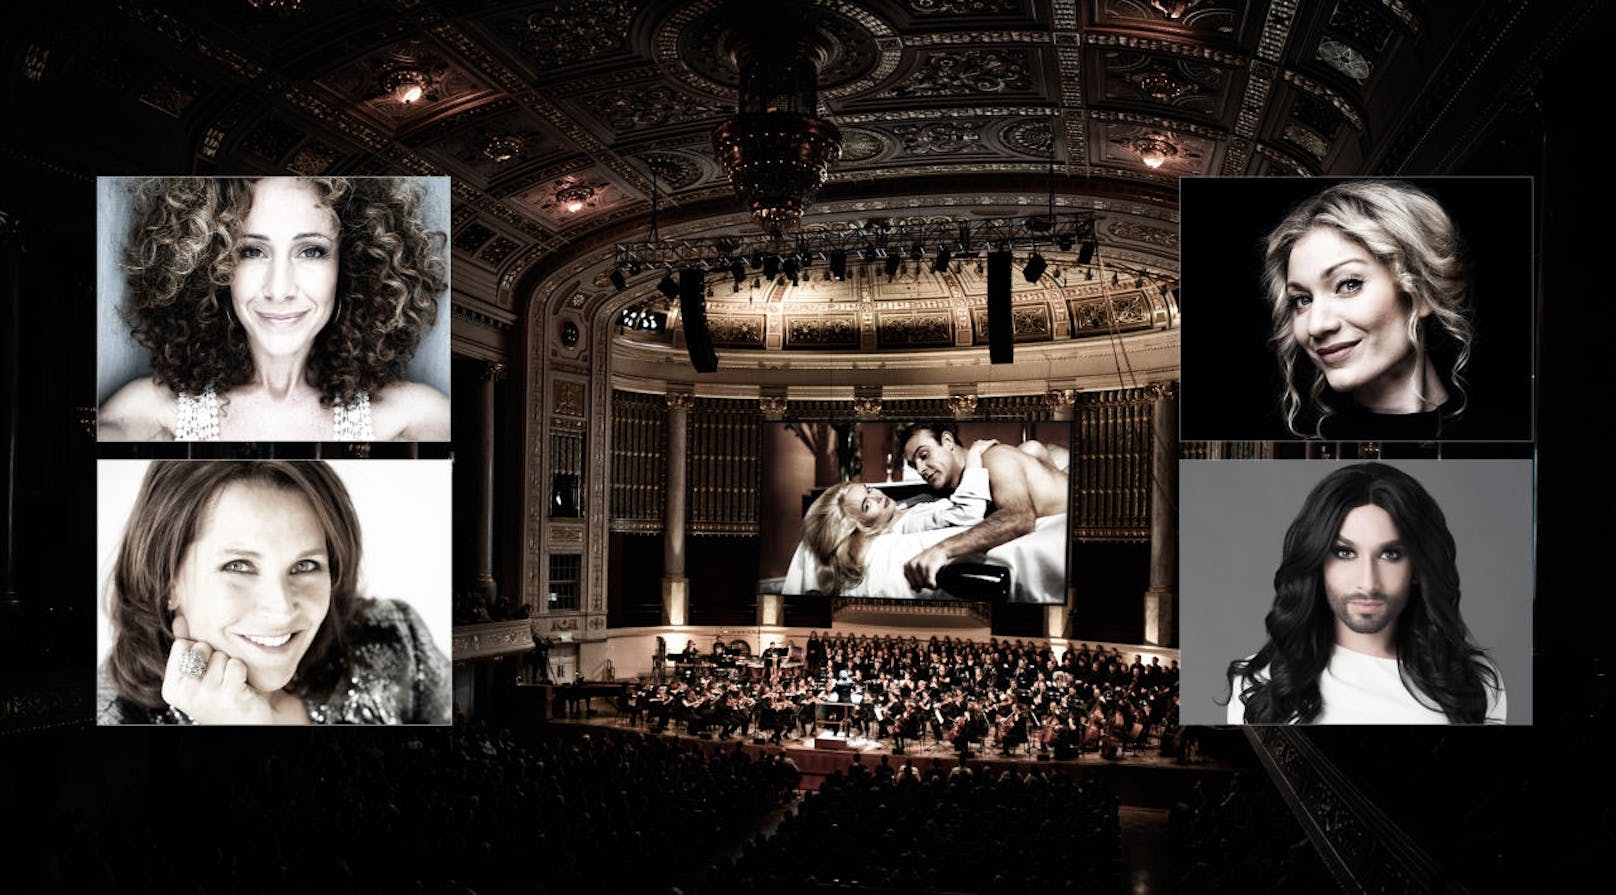 Ein großes Orchester und die stimmgewaltigen Publikumslieblinge Maya Hakvoort, Nazide Aylin und Sandra Pires erwarten das Publikum im Wiener Konzerthaus.